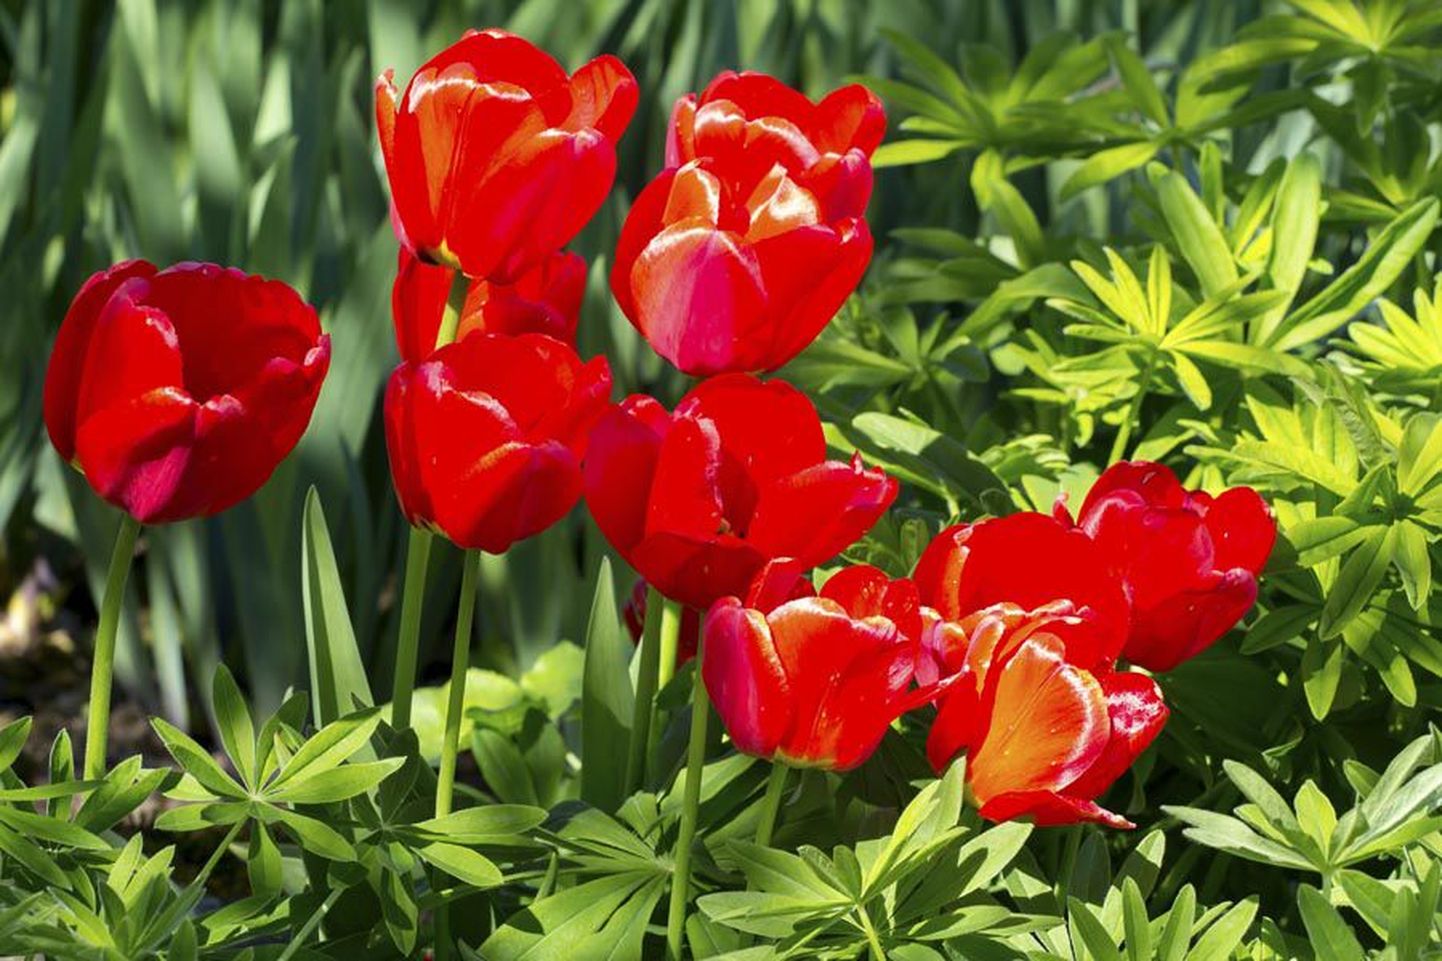 Tulpe on Risttee talus väga rikkalikus valikus, aga neid tumepunaseid, mis kasvasid kunagi vanaema aias, pole aiandi perenaine veel leidnud.